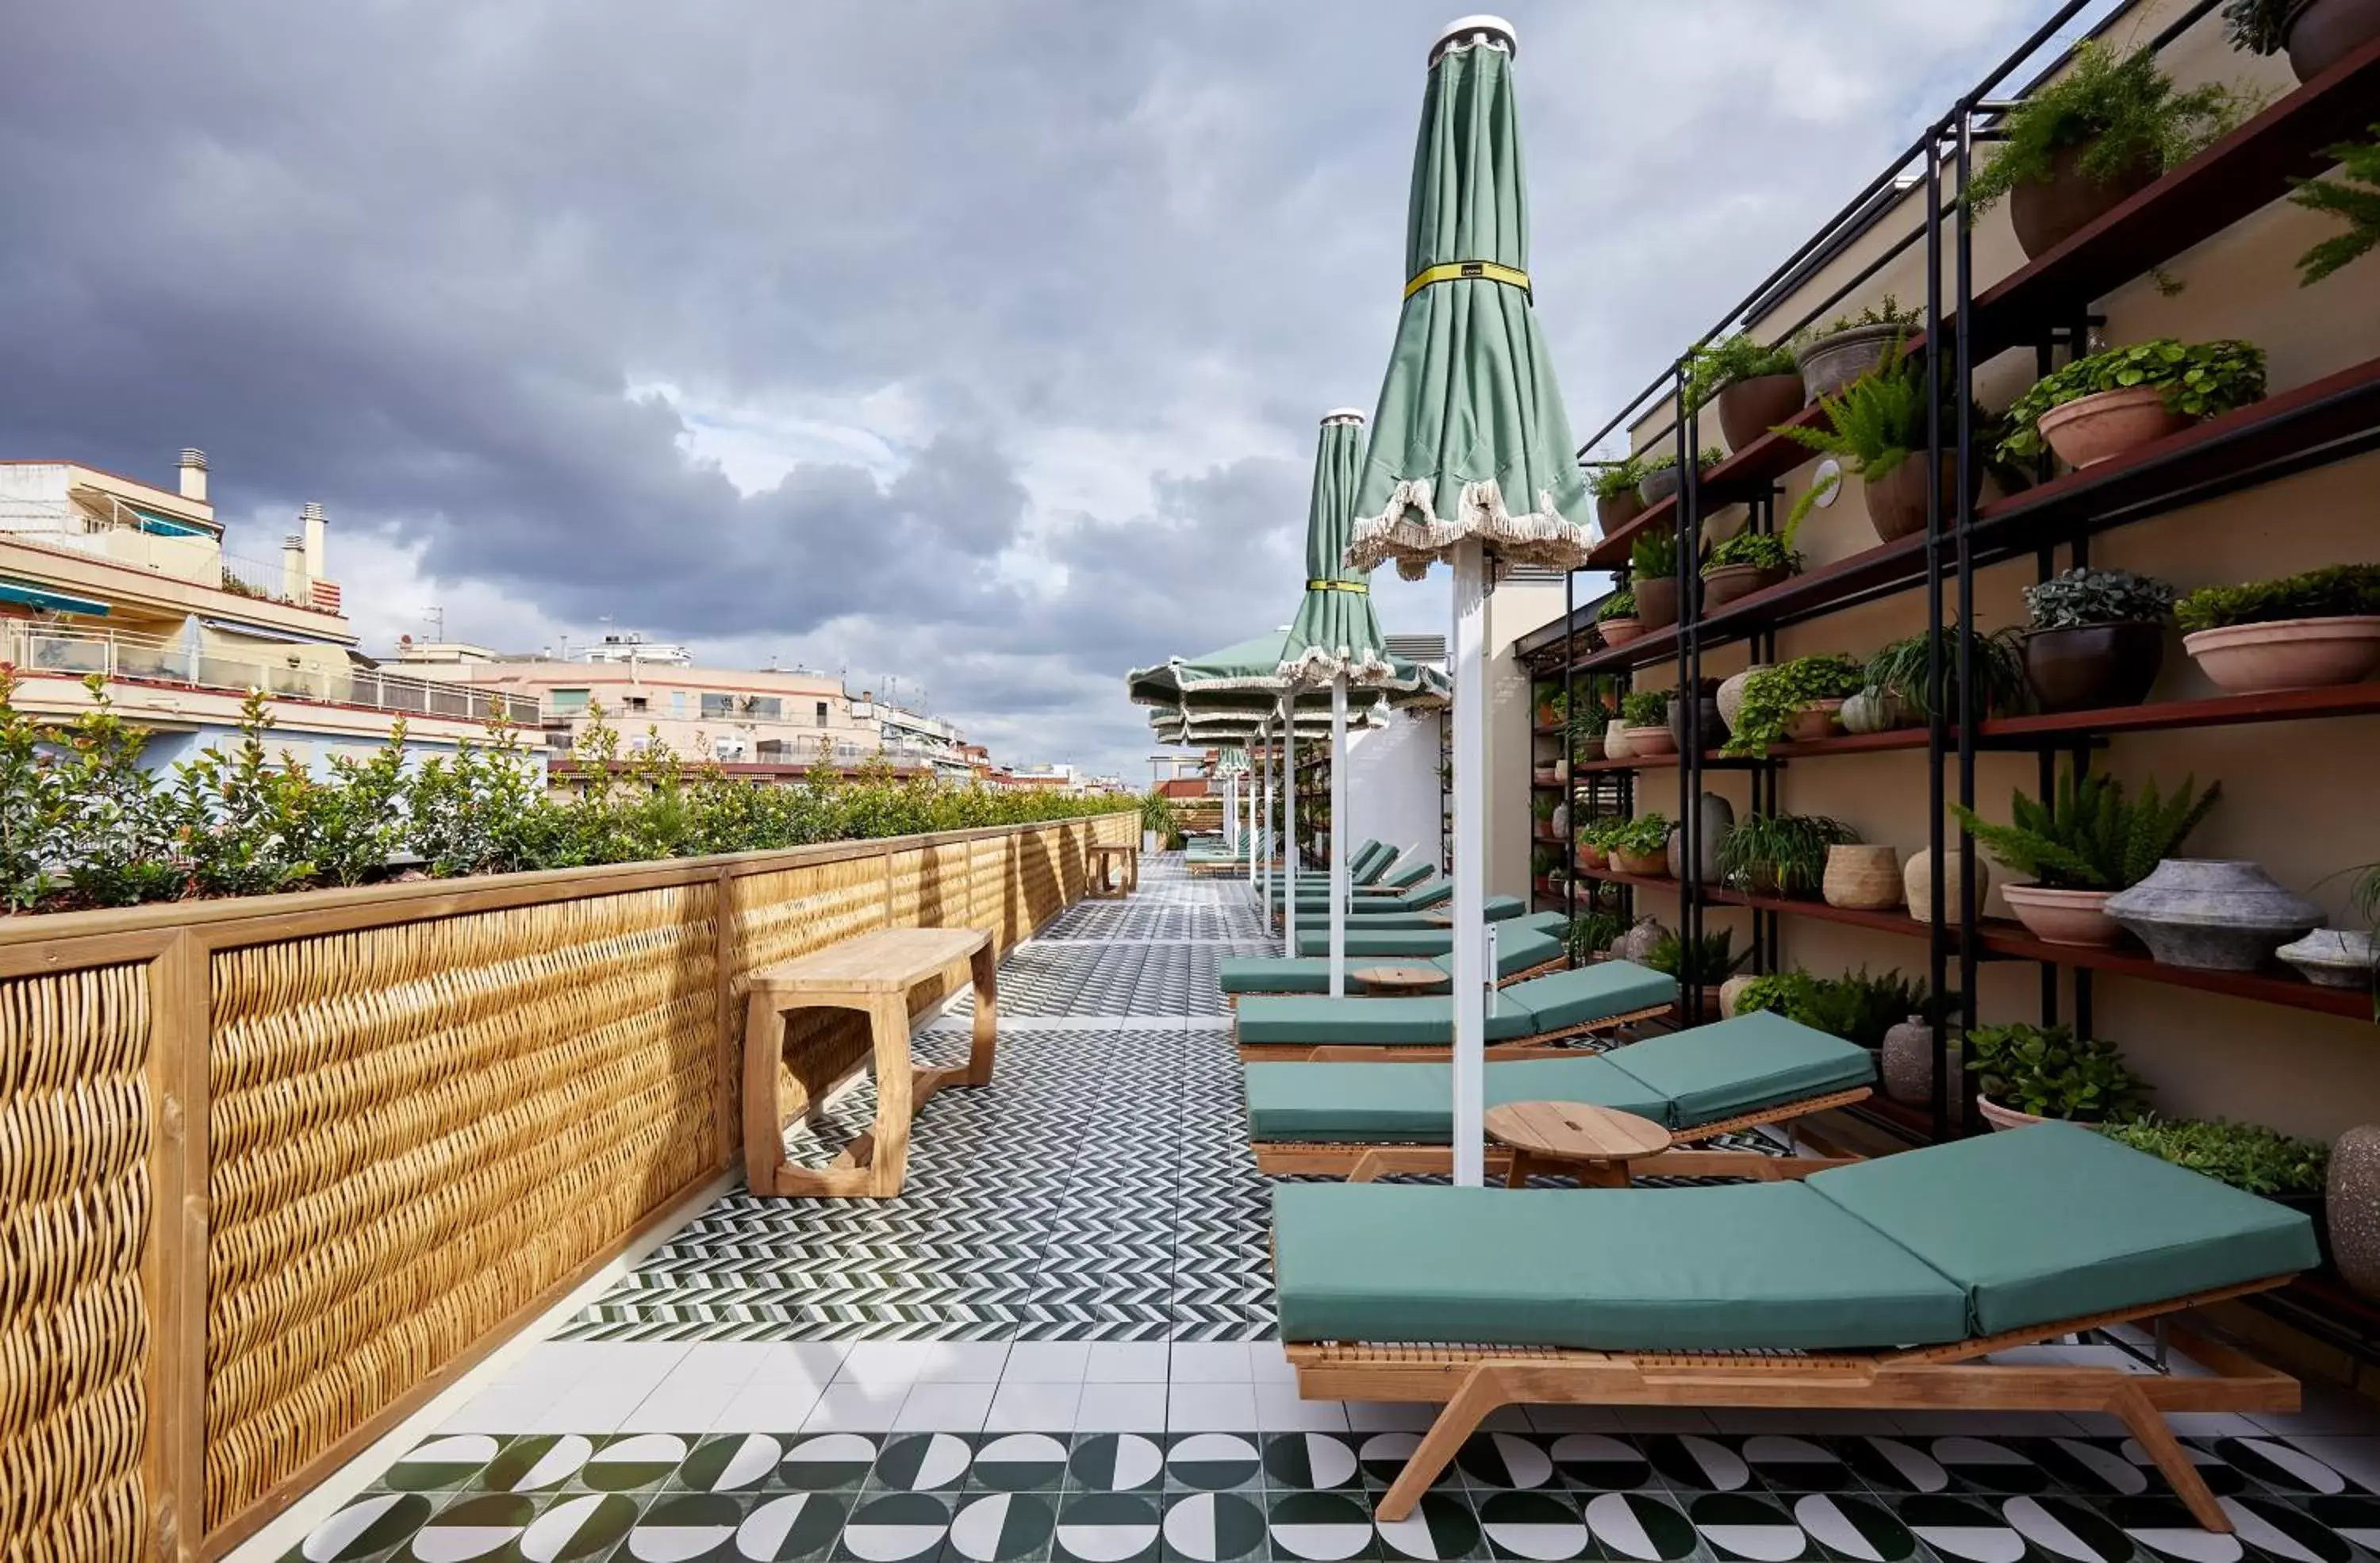 Patio in Radisson Blu 1882 Hotel, Barcelona Sagrada Familia